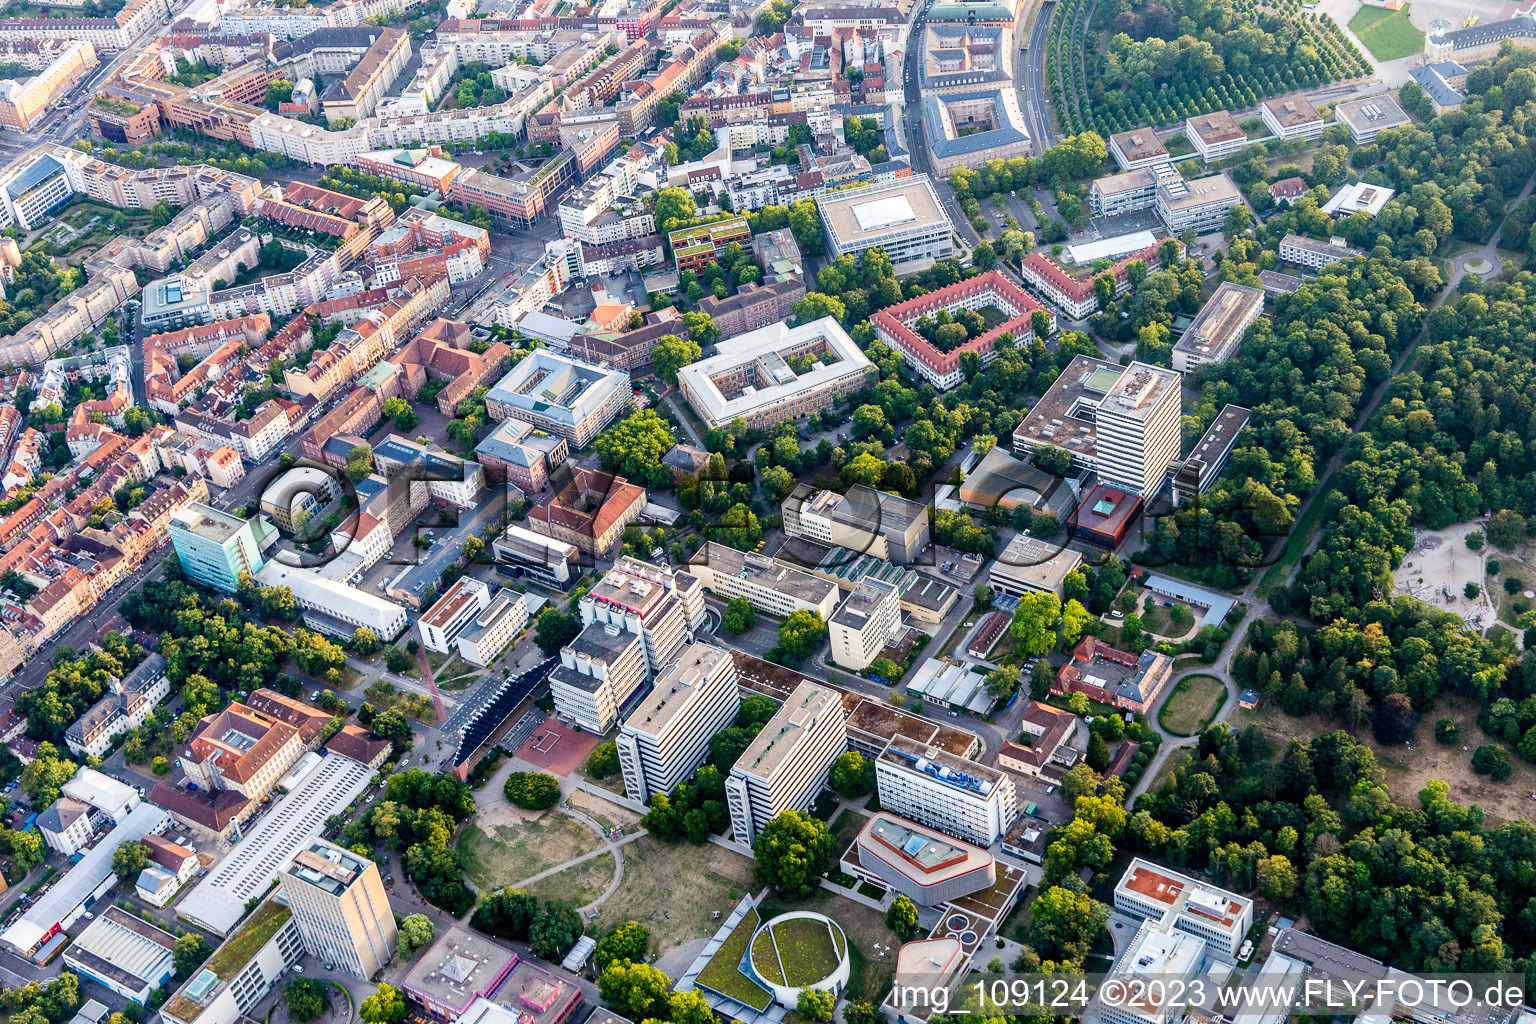 Vue aérienne de TROUSSE à le quartier Innenstadt-Ost in Karlsruhe dans le département Bade-Wurtemberg, Allemagne